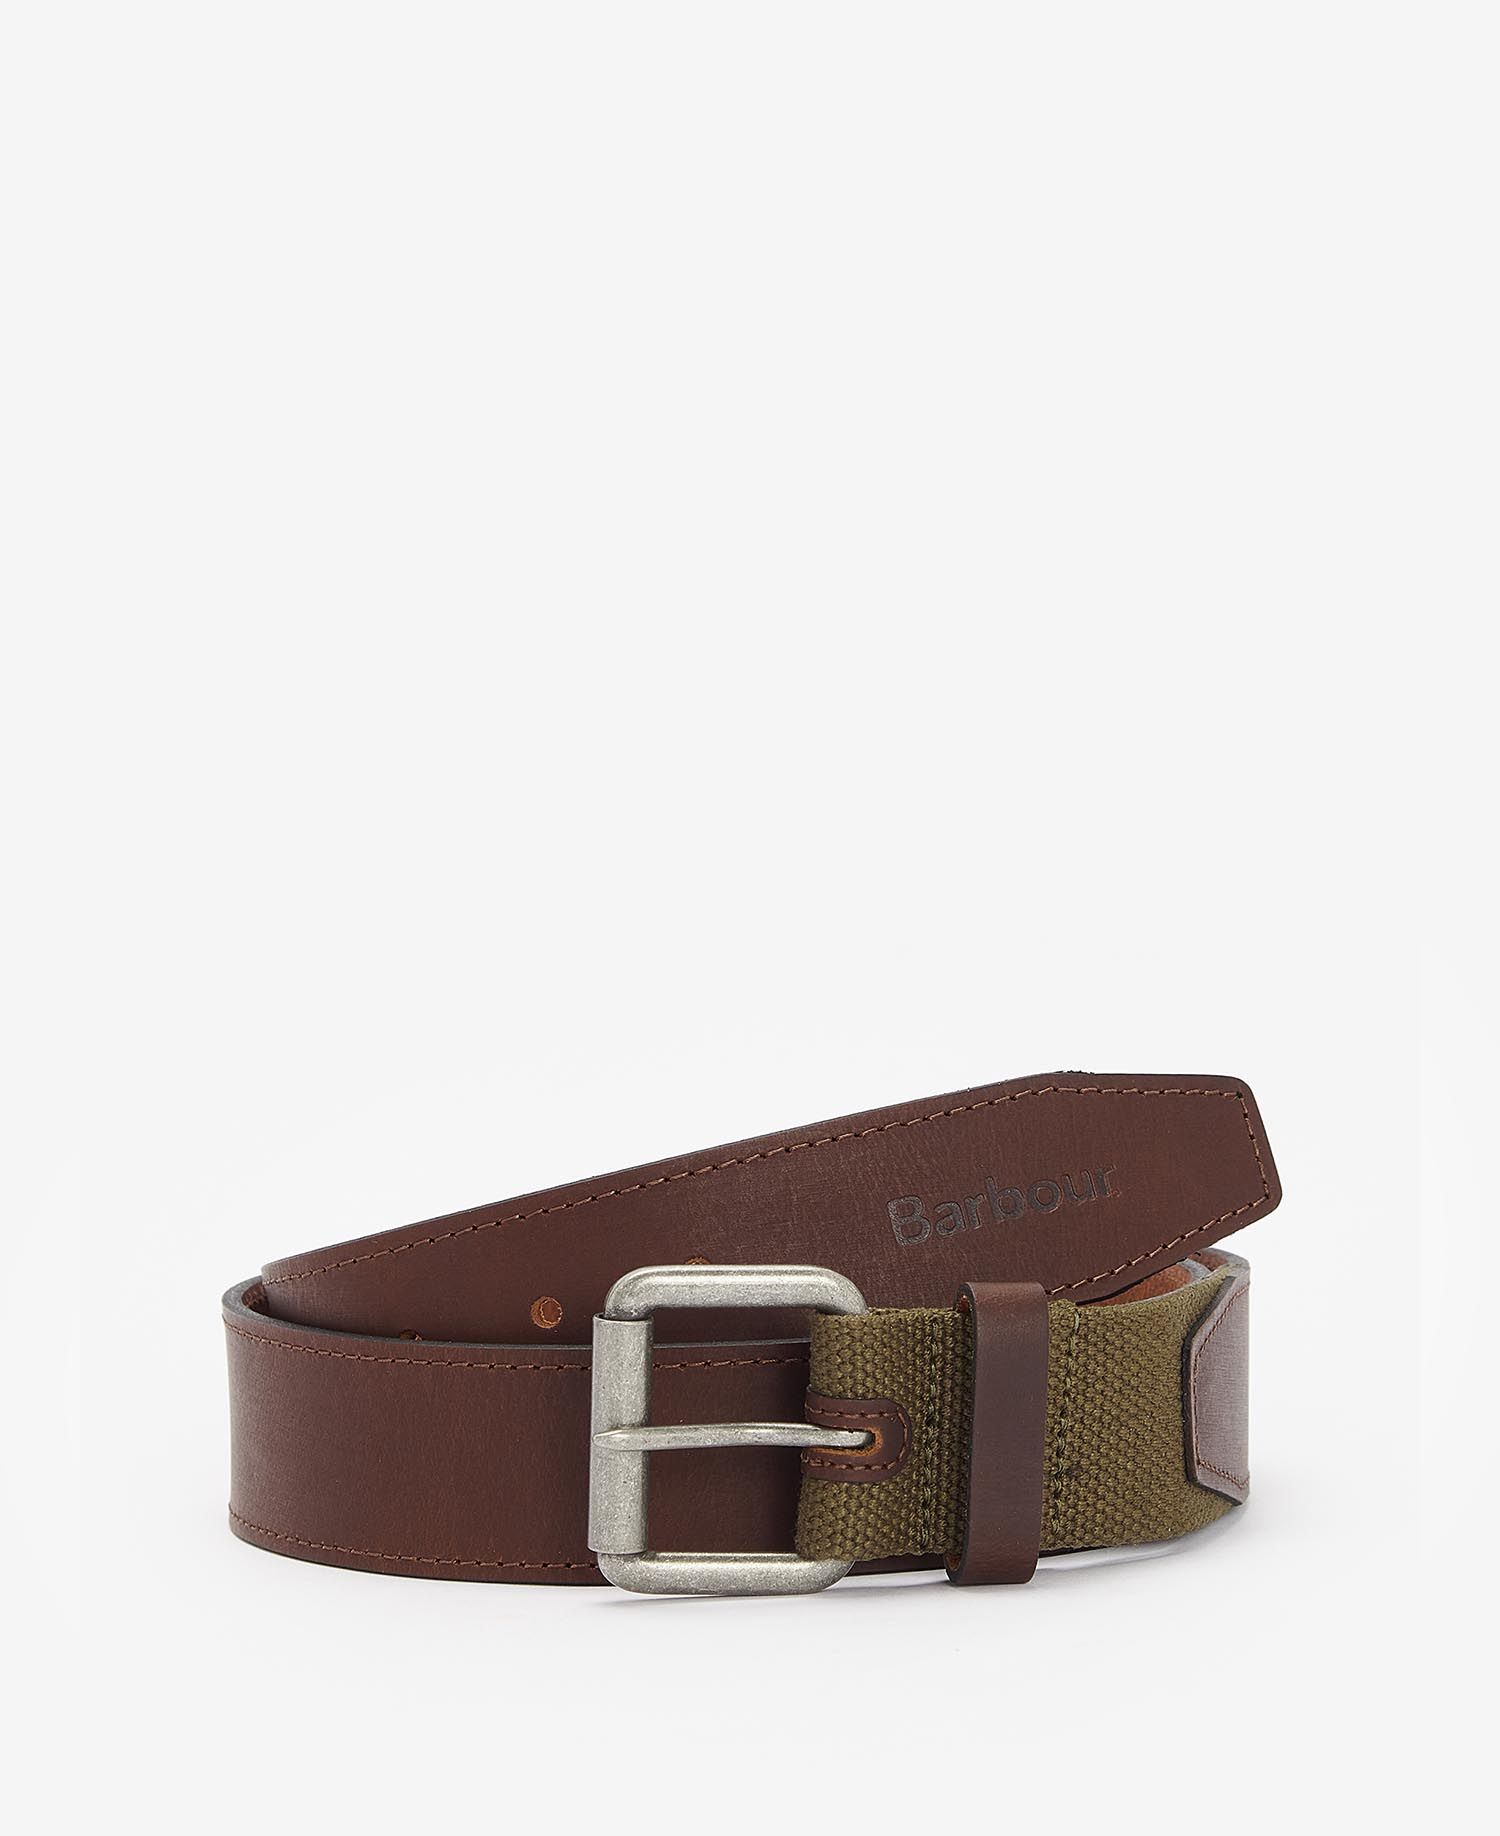 Barbour Webbing/Leather Belt in Olive | Barbour